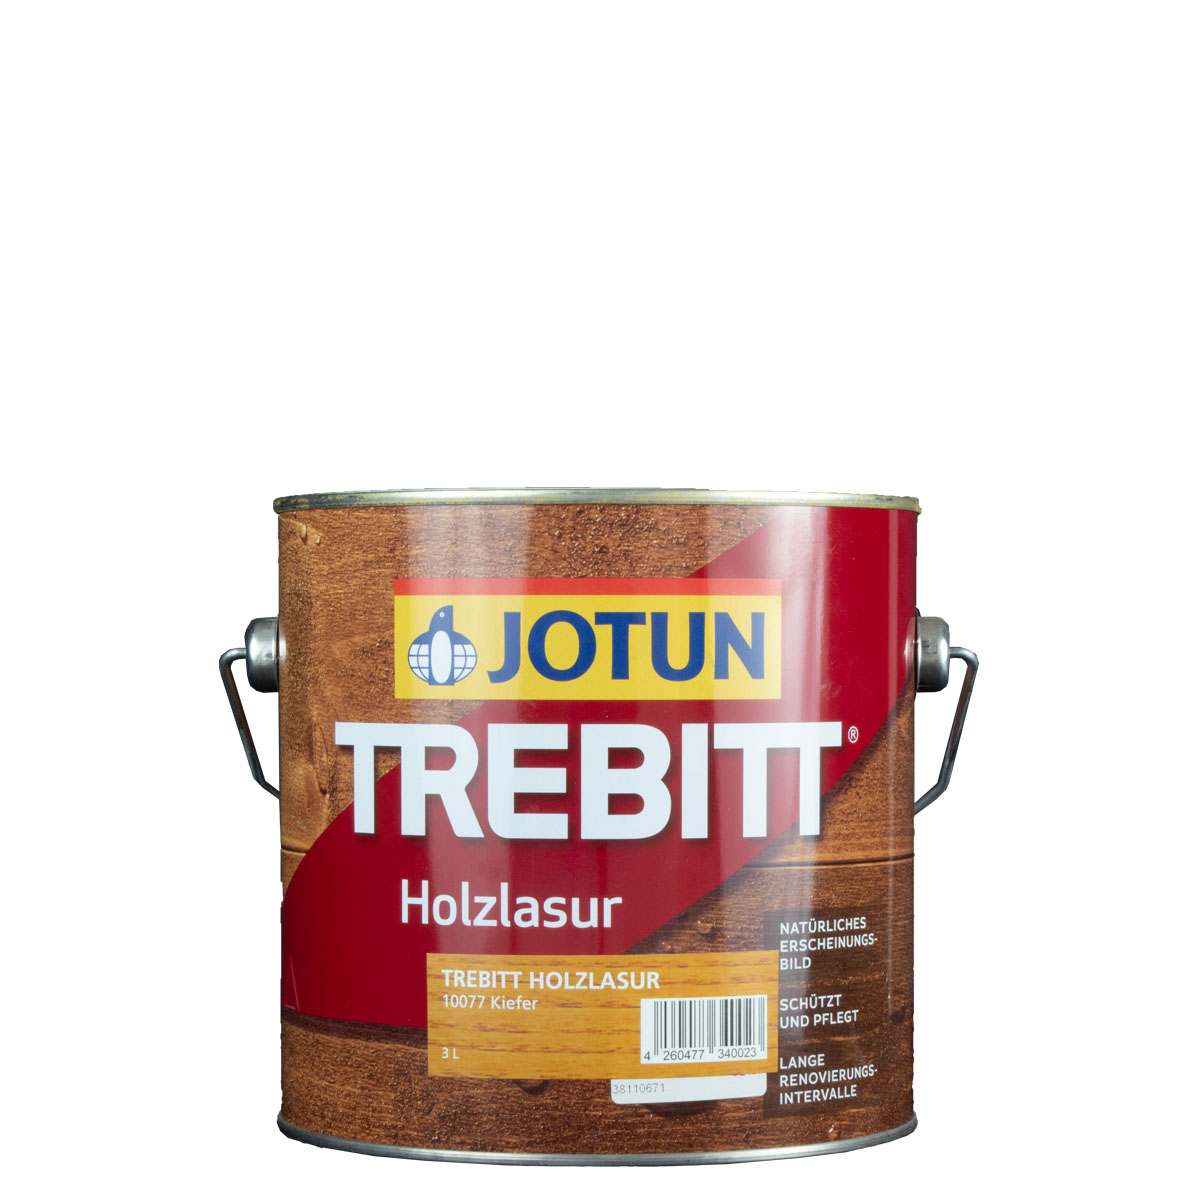 Jotun Trebitt 3L eiche hell 868, Holzschutzlasur